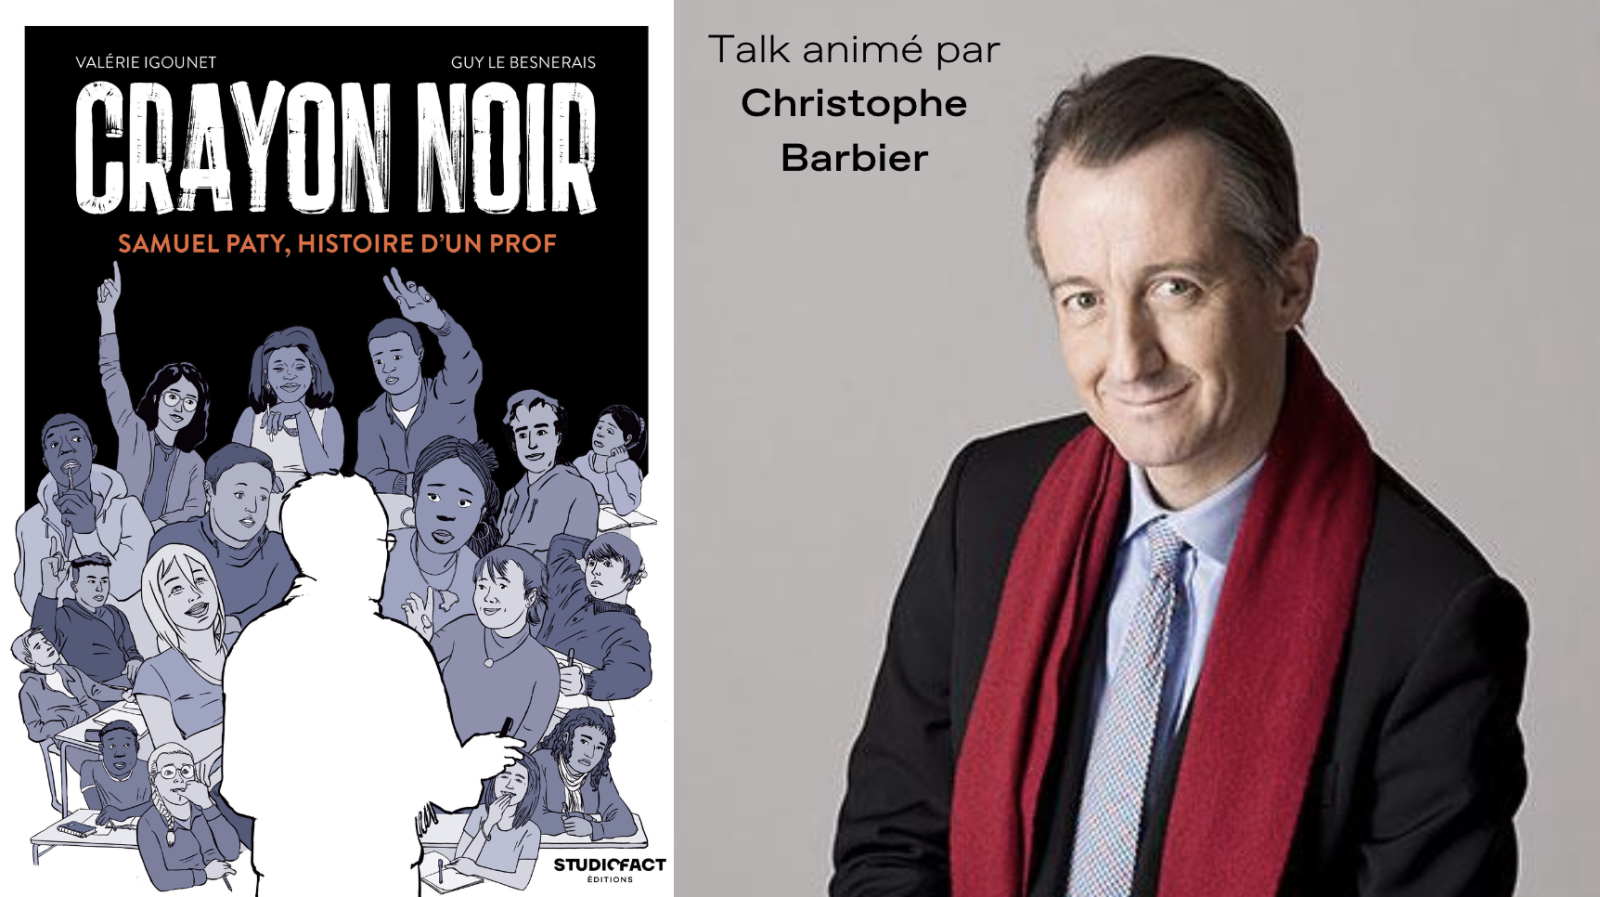 Rencontre avec les auteurs de "Crayon noir", le roman graphique sur Samuel Paty - Talk animé par Christophe Barbier